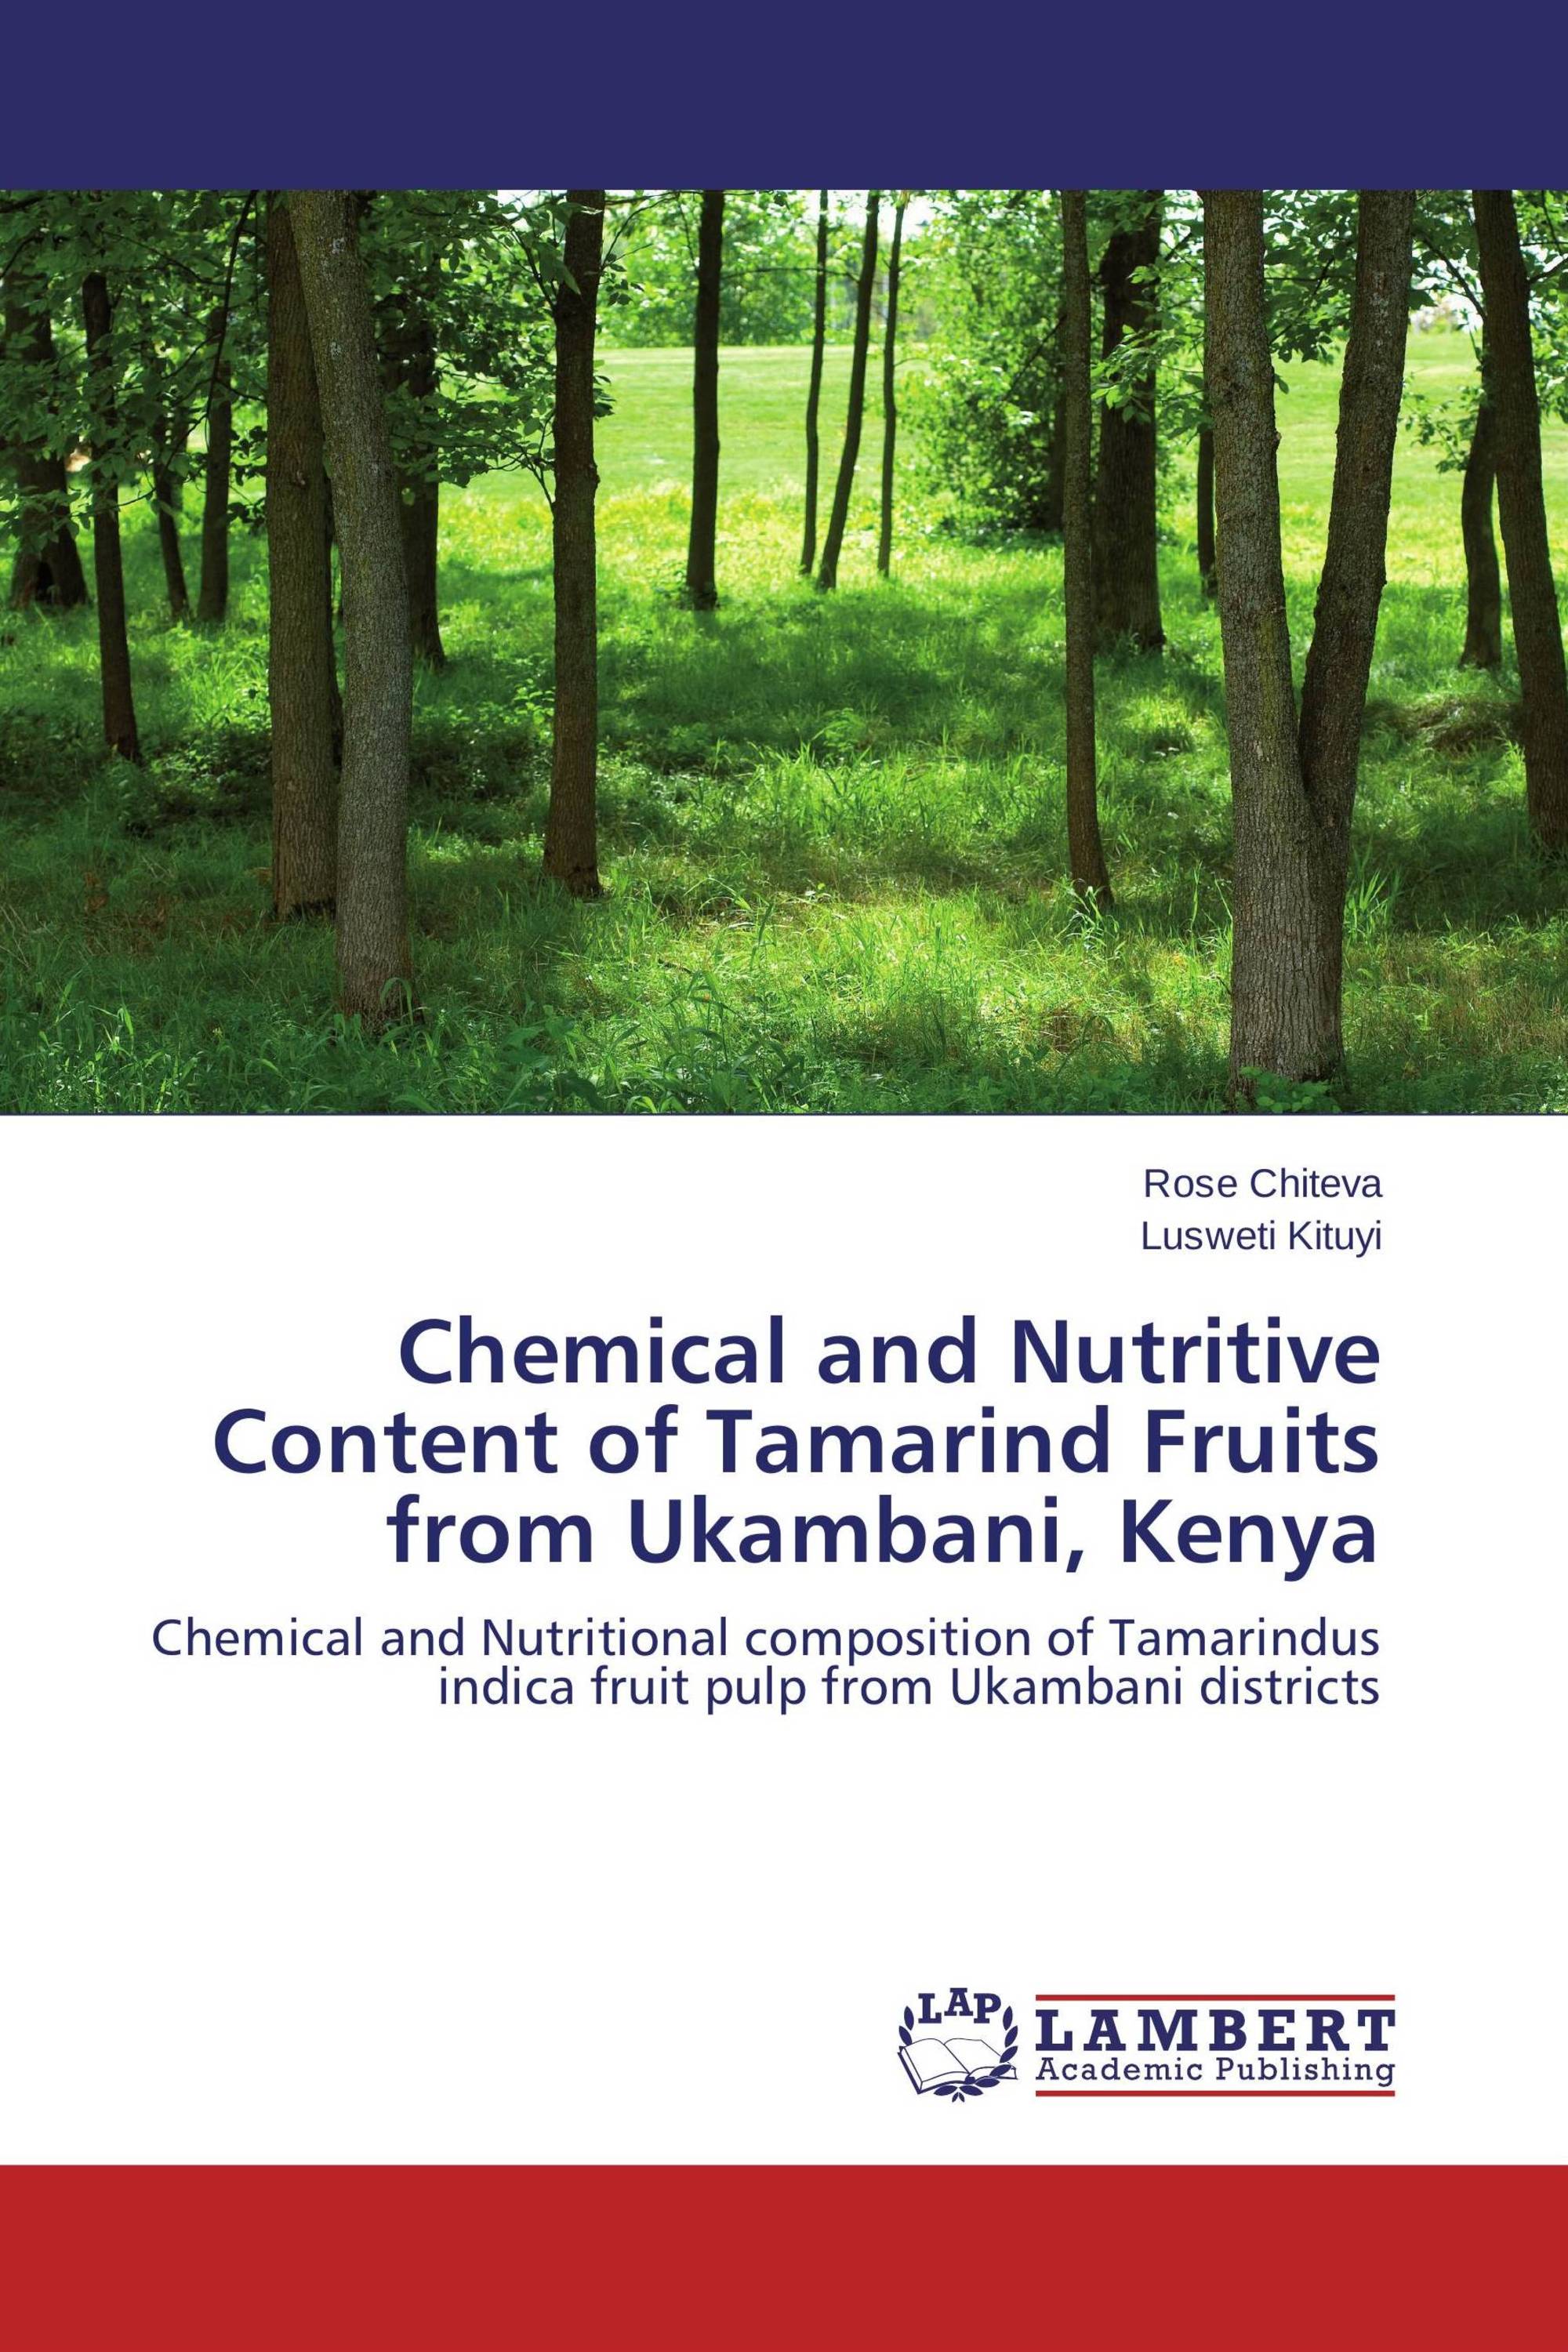 Chemical and Nutritive Content of Tamarind Fruits from Ukambani, Kenya